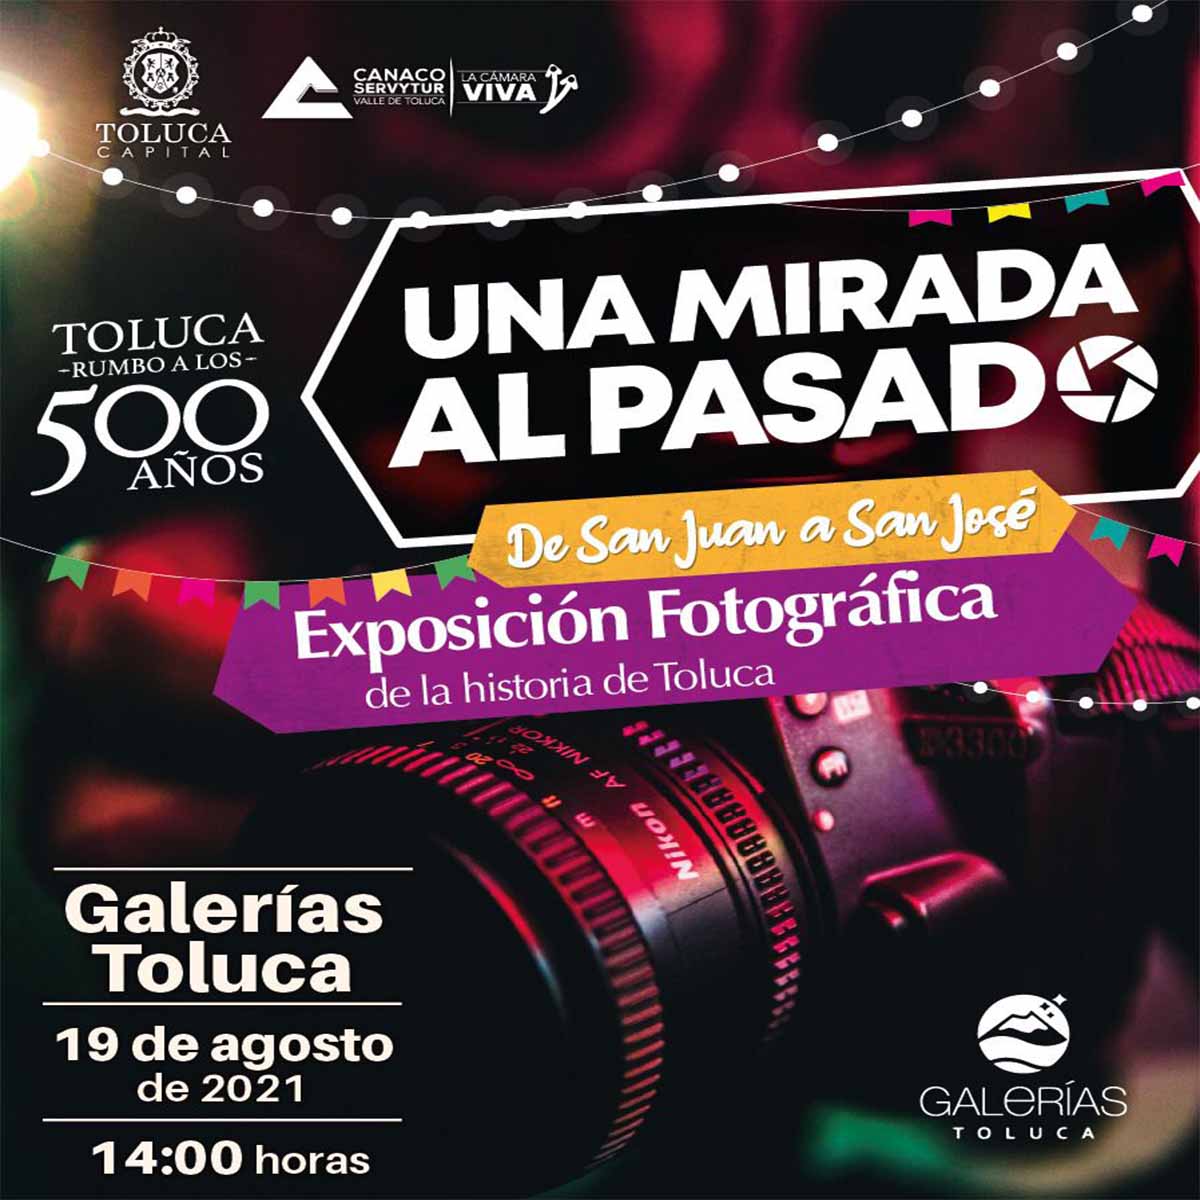 Conoce la exposición fotográfica “Una mirada al pasado” en Toluca